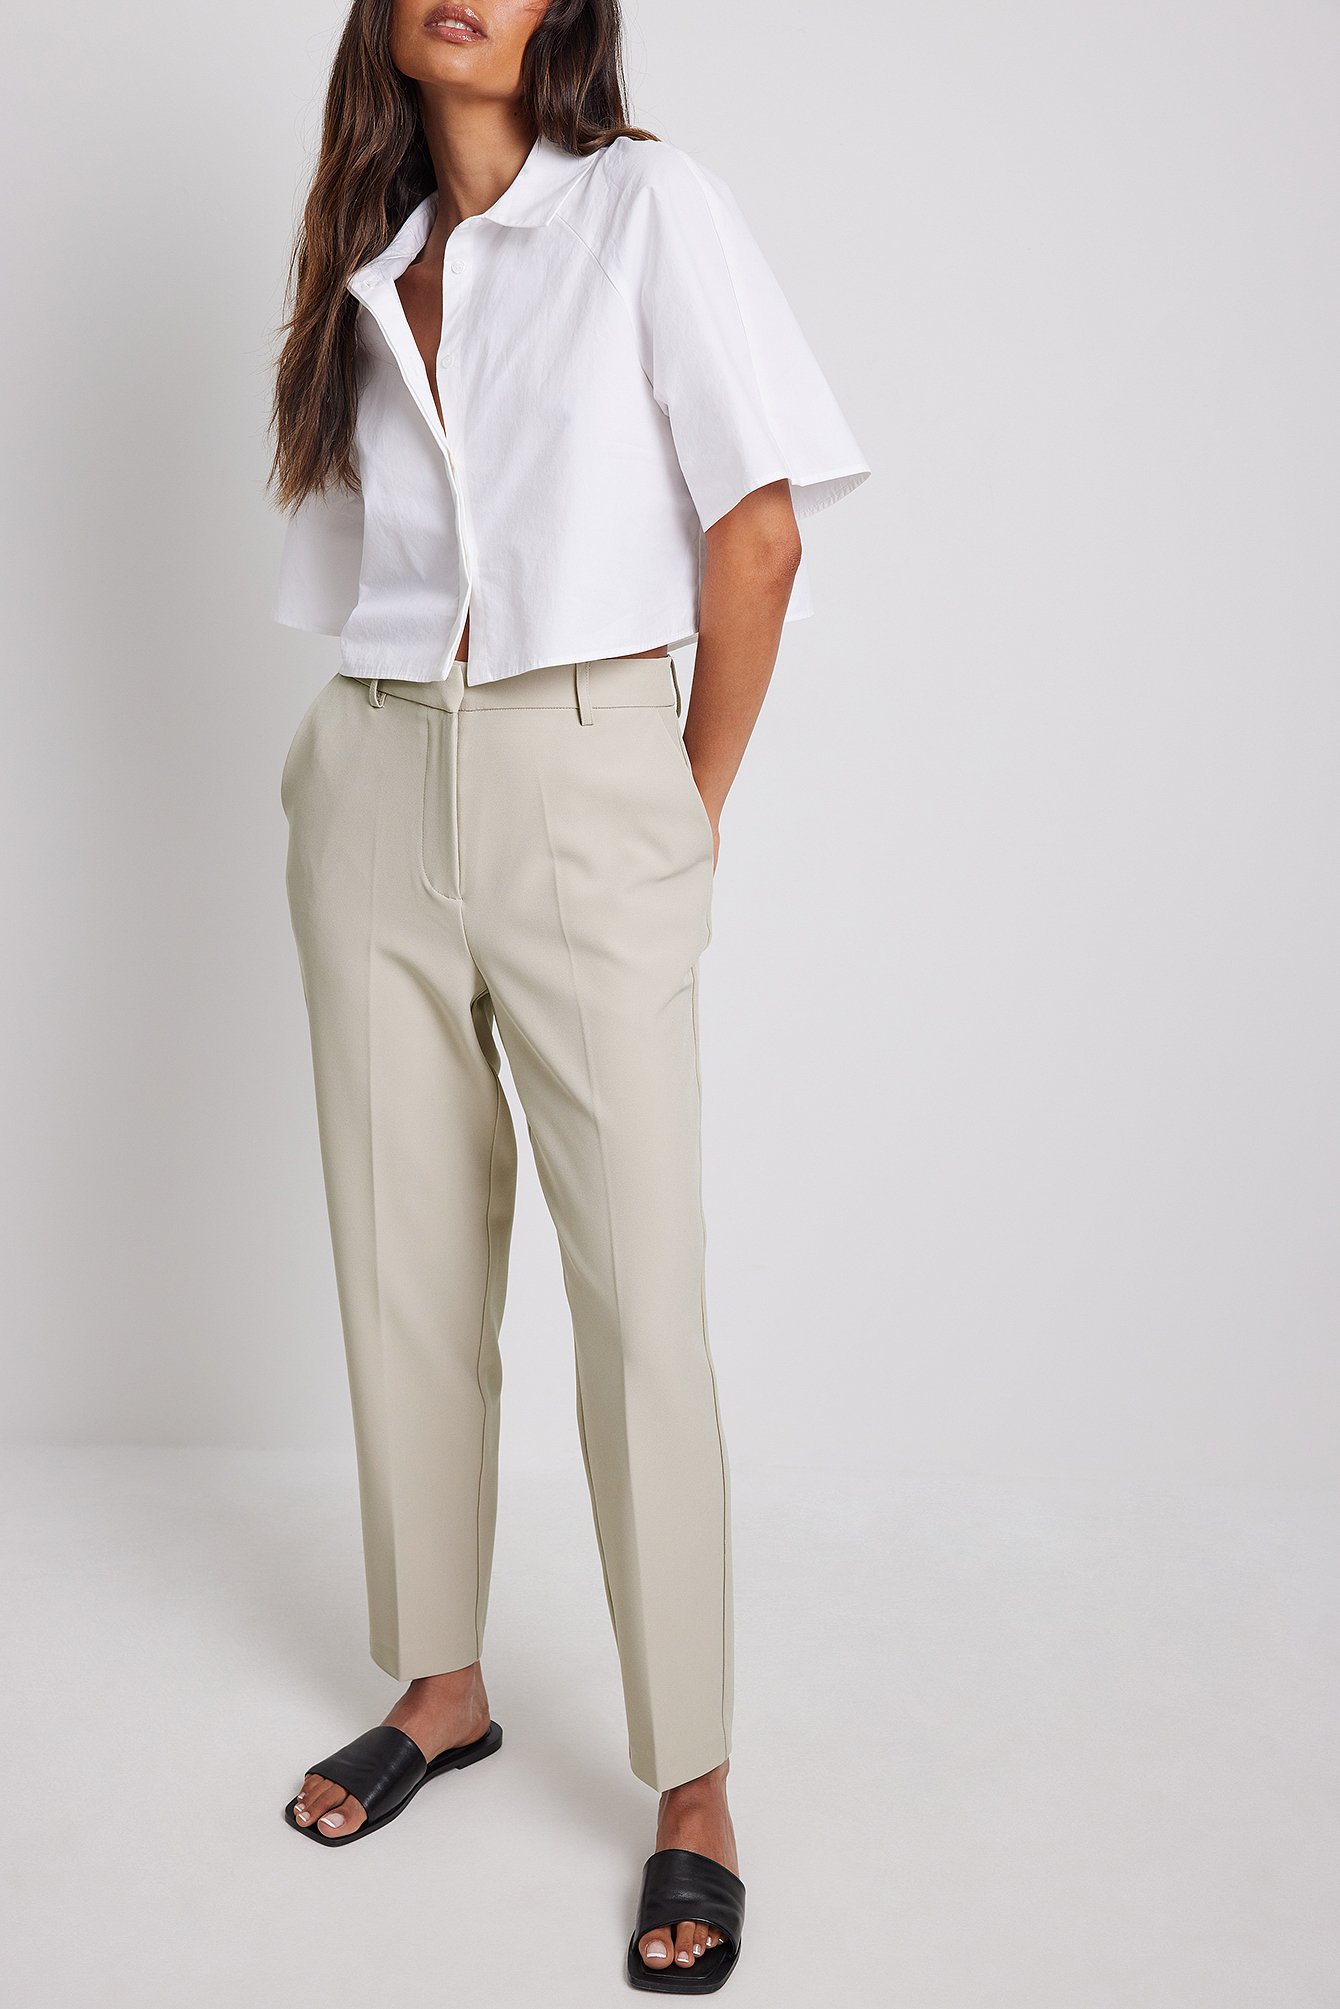 Filippa K Karlie Tailored Trousers - Farfetch